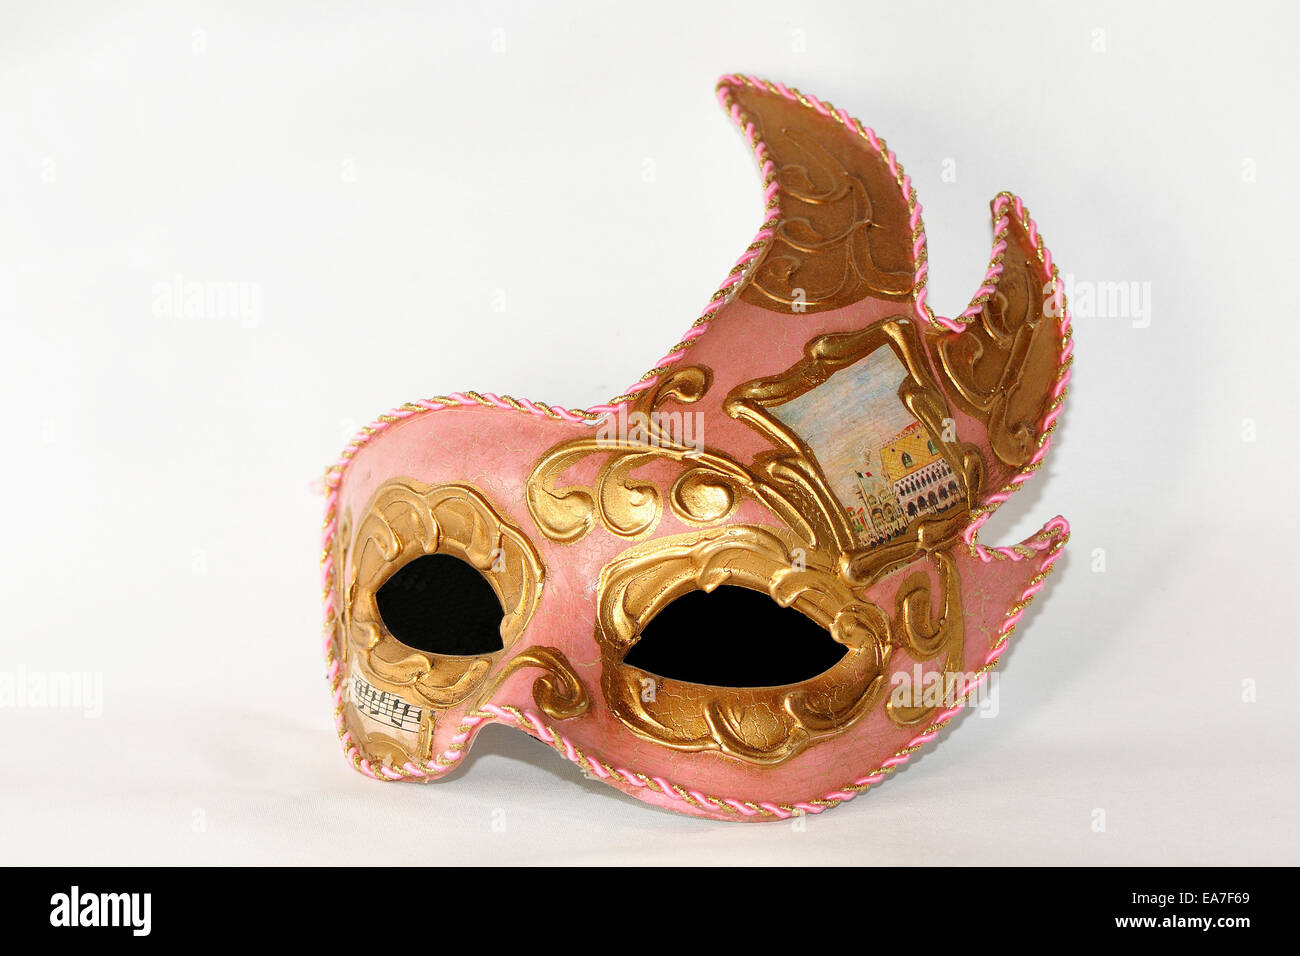 Rose et or décoration masque bal masqué Photo Stock - Alamy